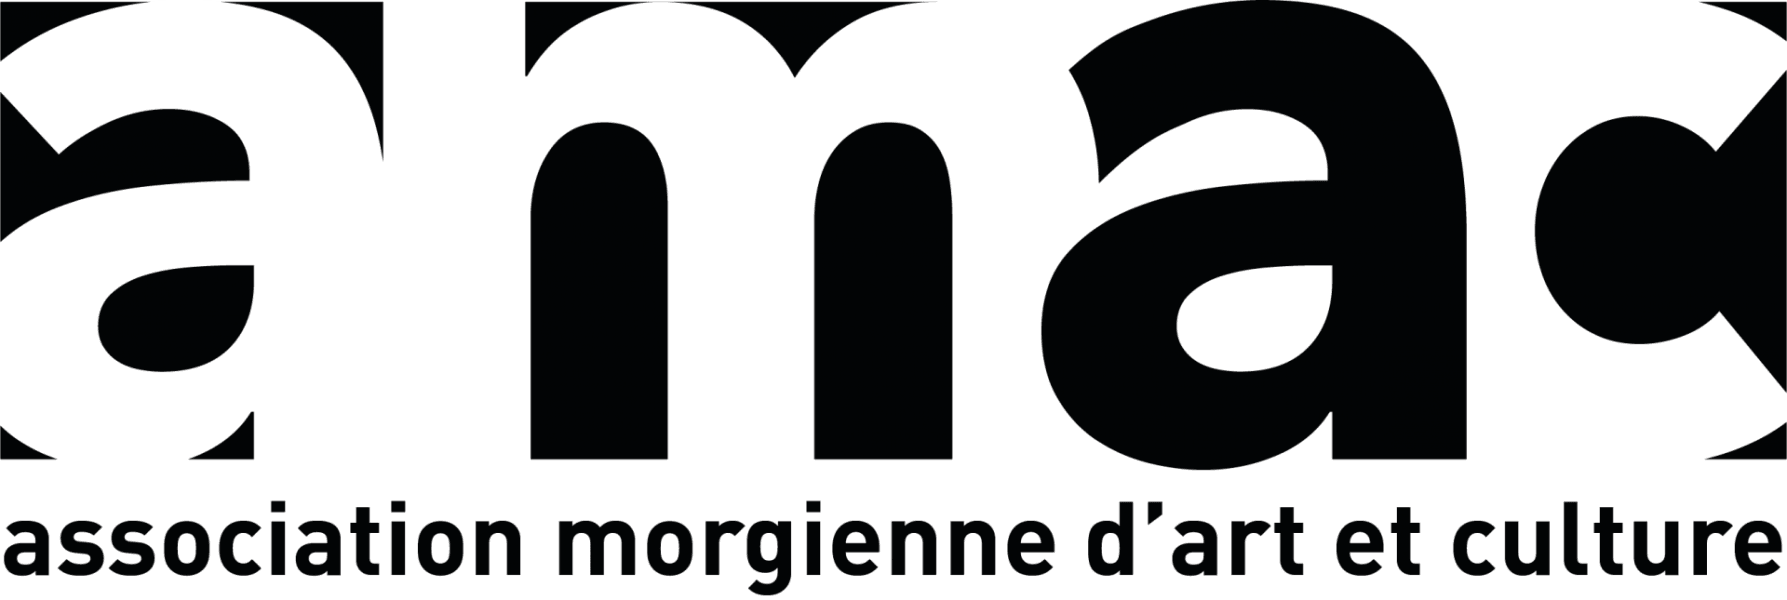 Association morgienne d'art et culture (AMAC)